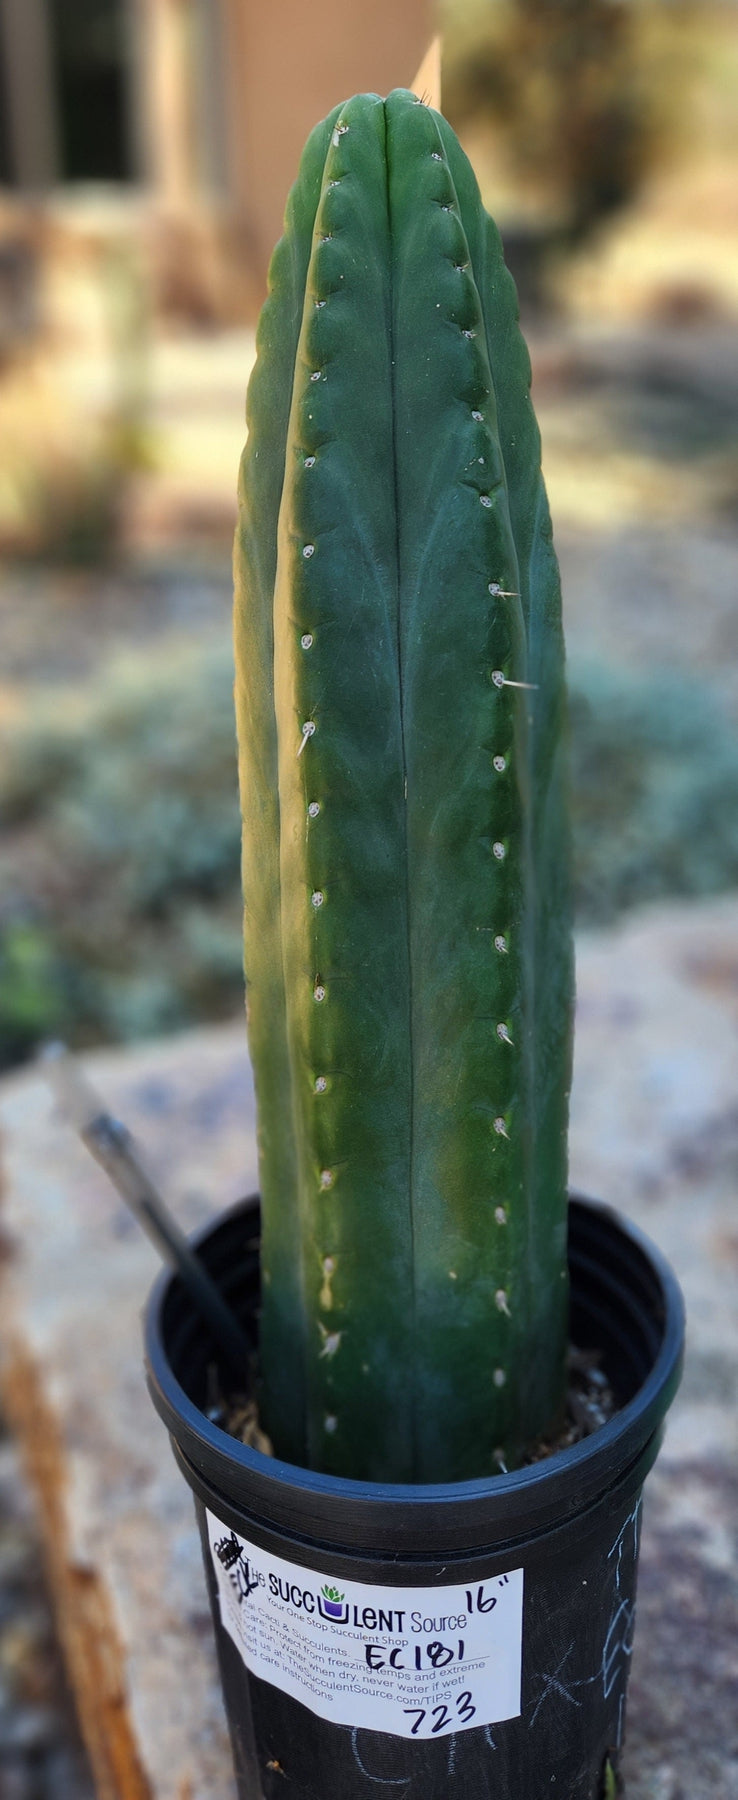 #EC181 EXACT Trichocereus Pachanoi "ECK" Cactus Potted 16"